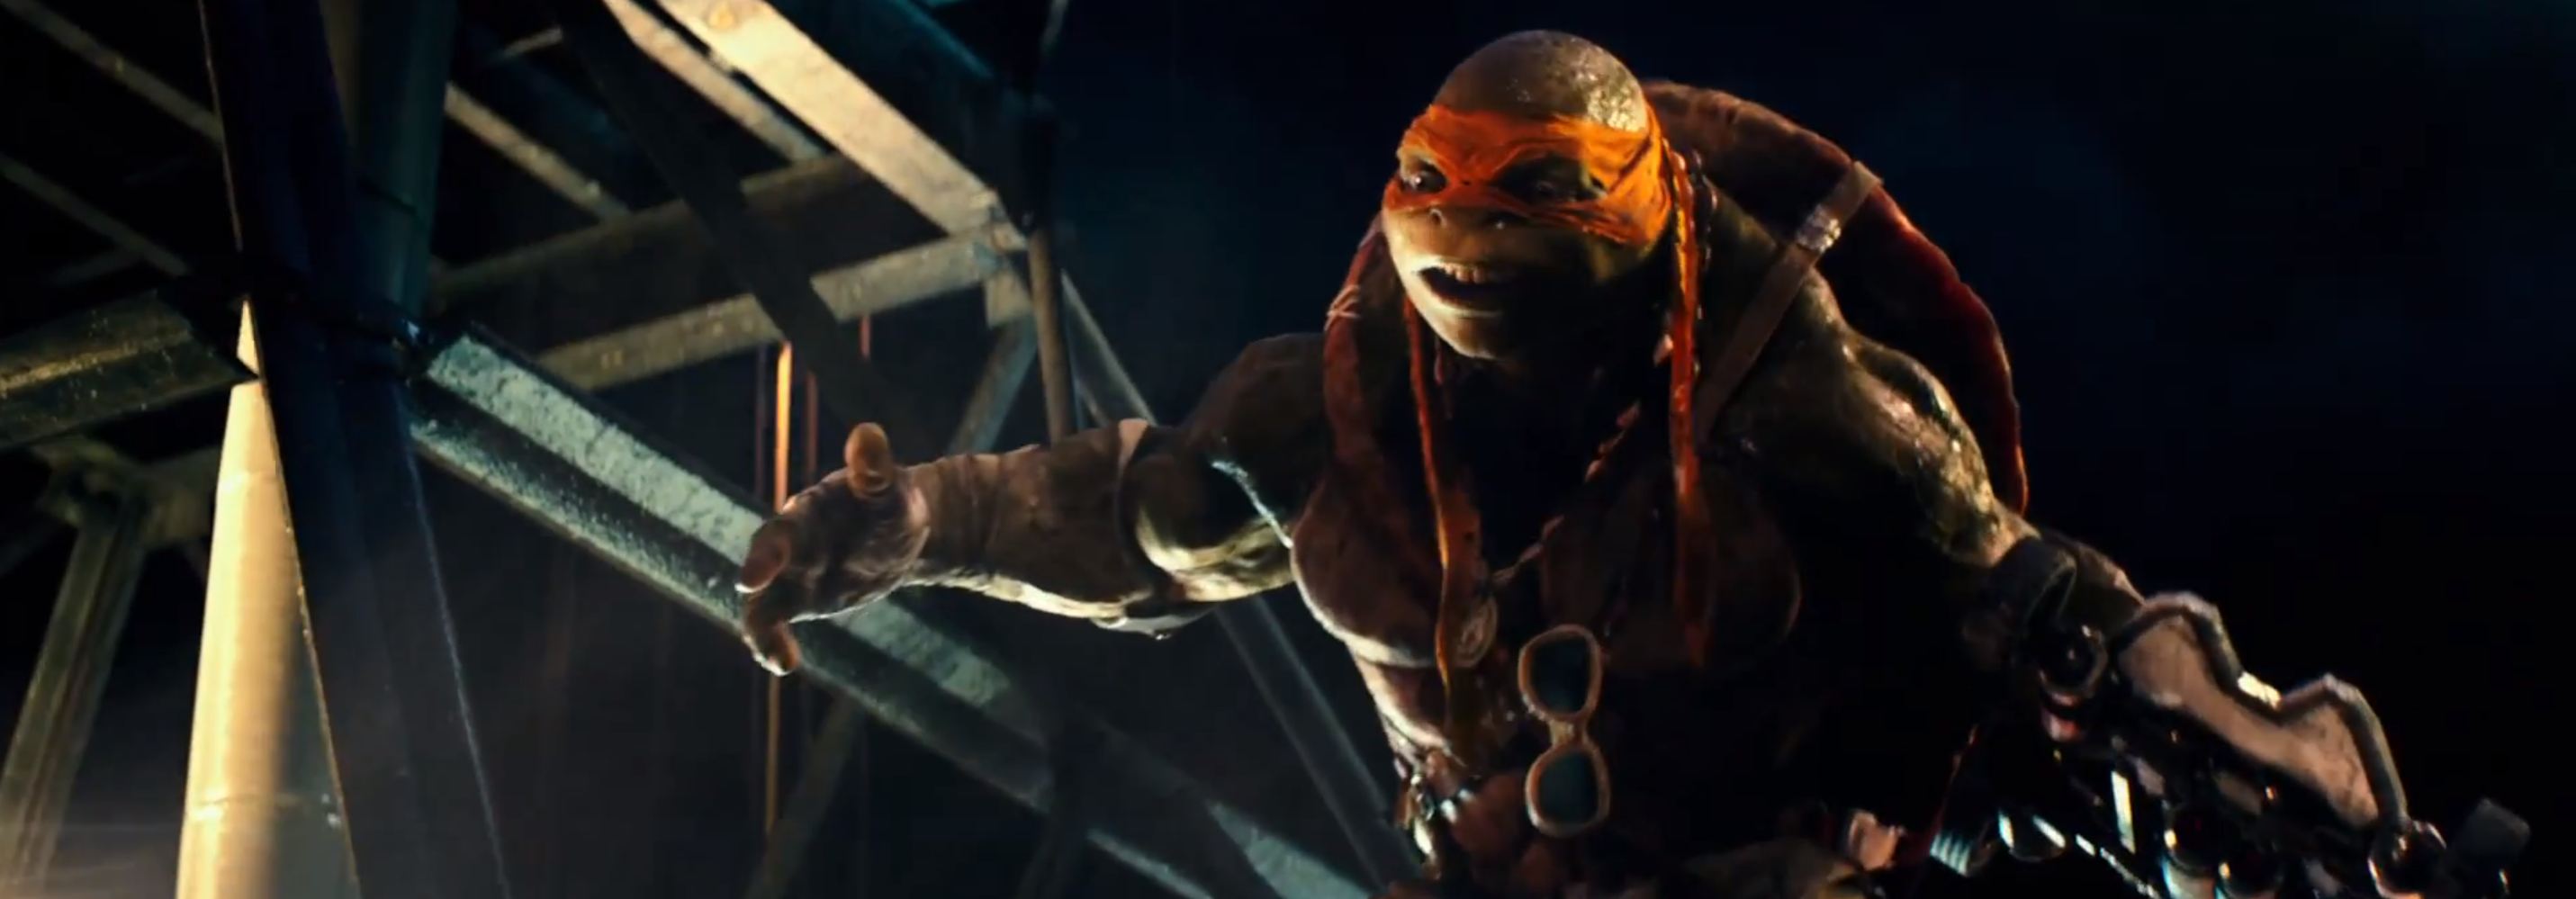 Movie Teenage Mutant Ninja Turtles 2014 2862x999